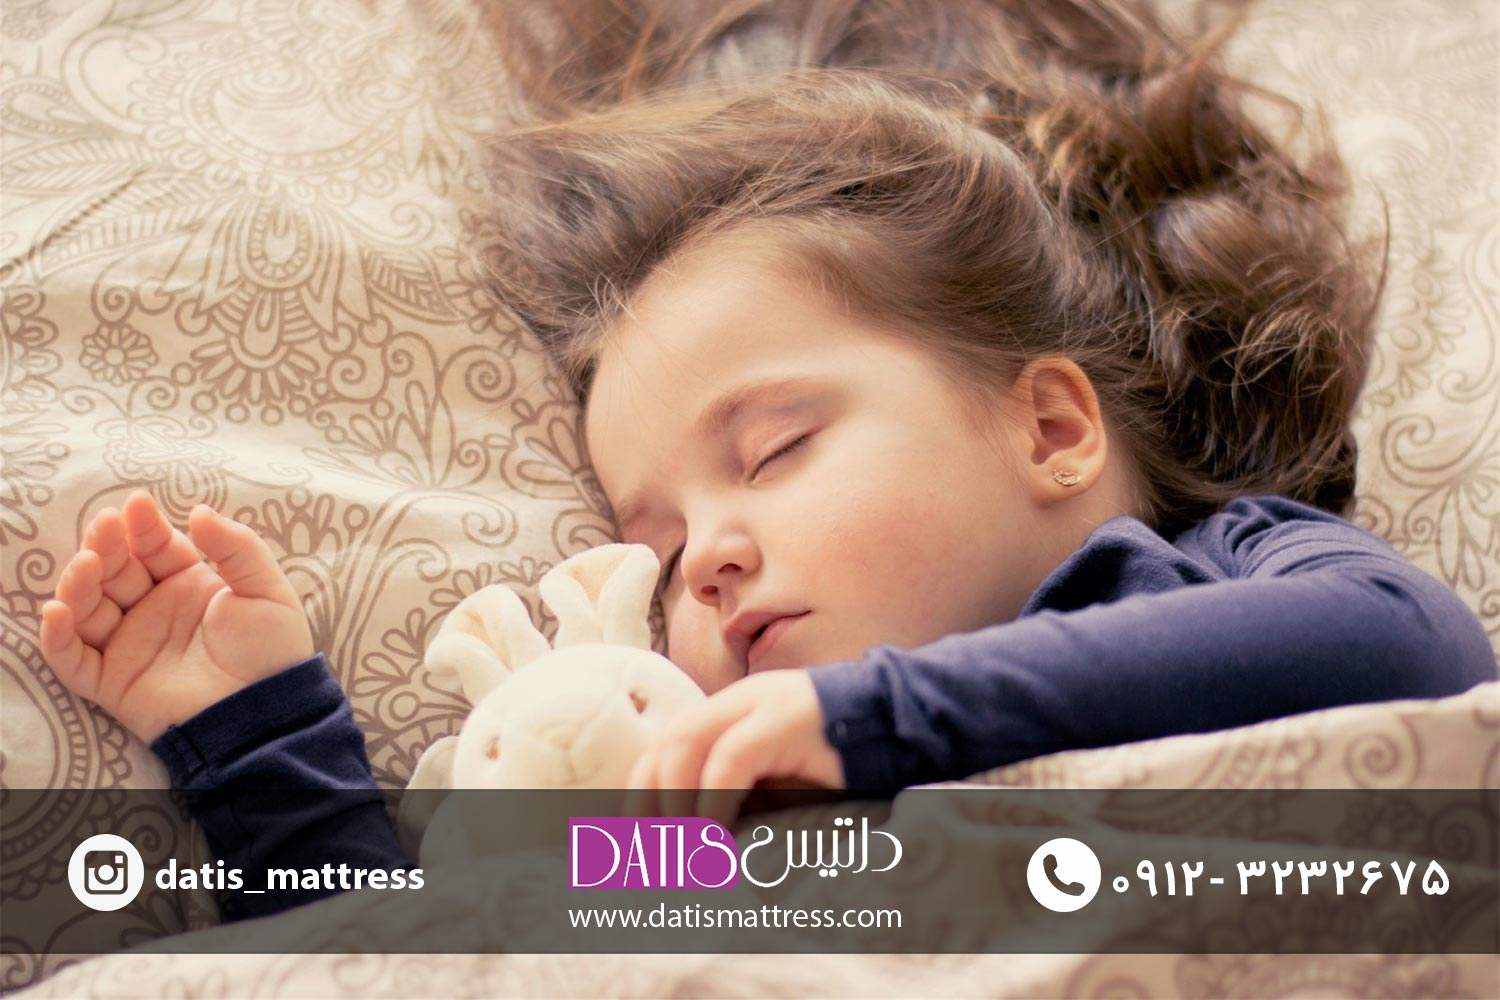 عادات خواب کودکان و نوجوانان می تواند میزان استرس و اضطراب را در آن ها افزایش دهد و حتی بر نحوه واکنش بدن اثر گذار باشد